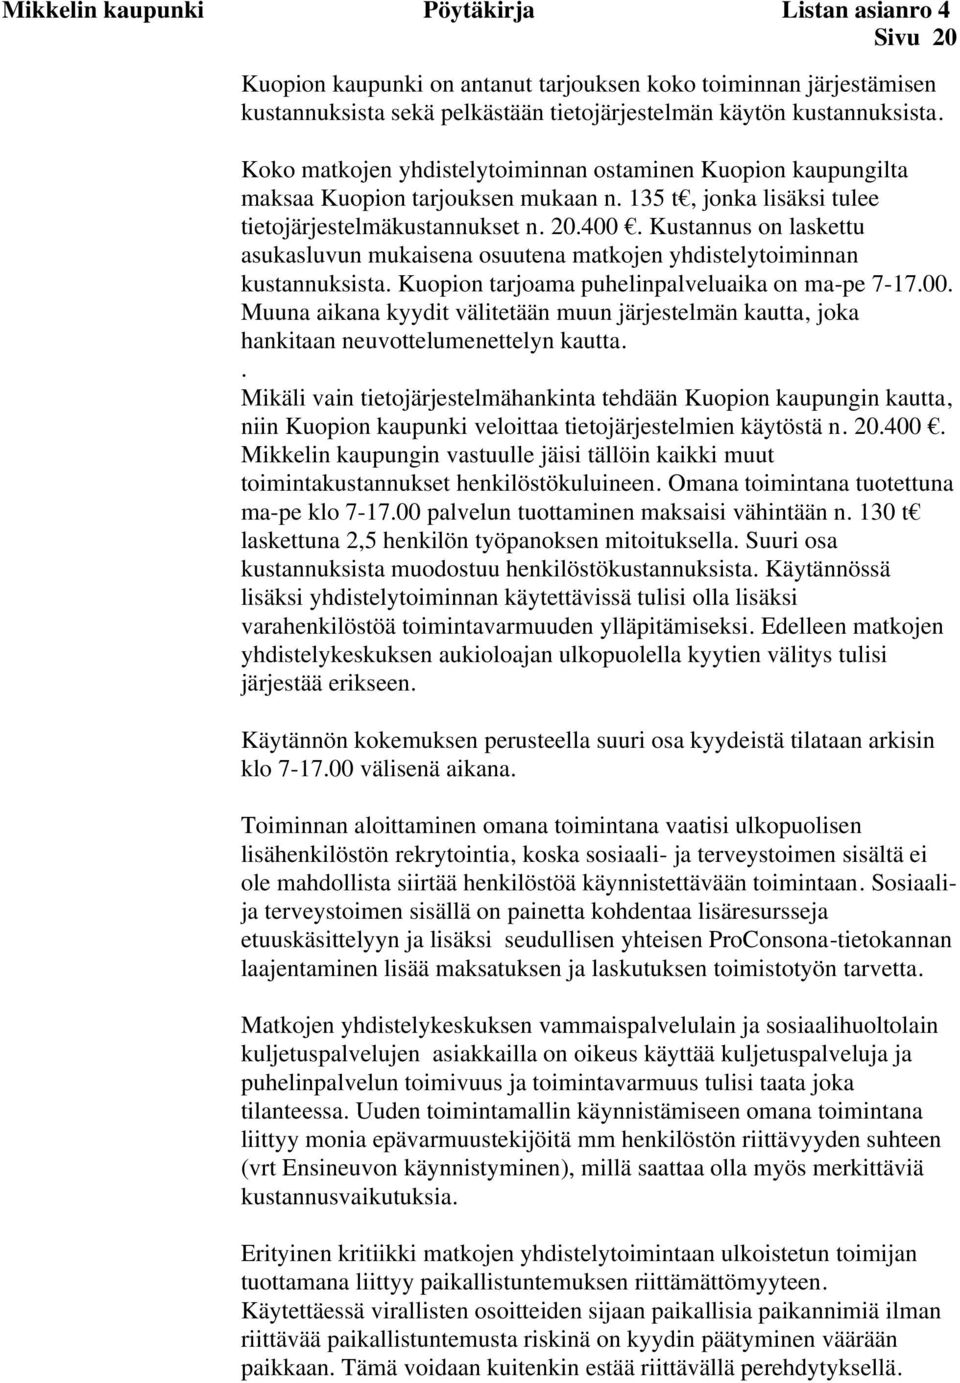 Kustannus on laskettu asukasluvun mukaisena osuutena matkojen yhdistelytoiminnan kustannuksista. Kuopion tarjoama puhelinpalveluaika on ma-pe 7-17.00.